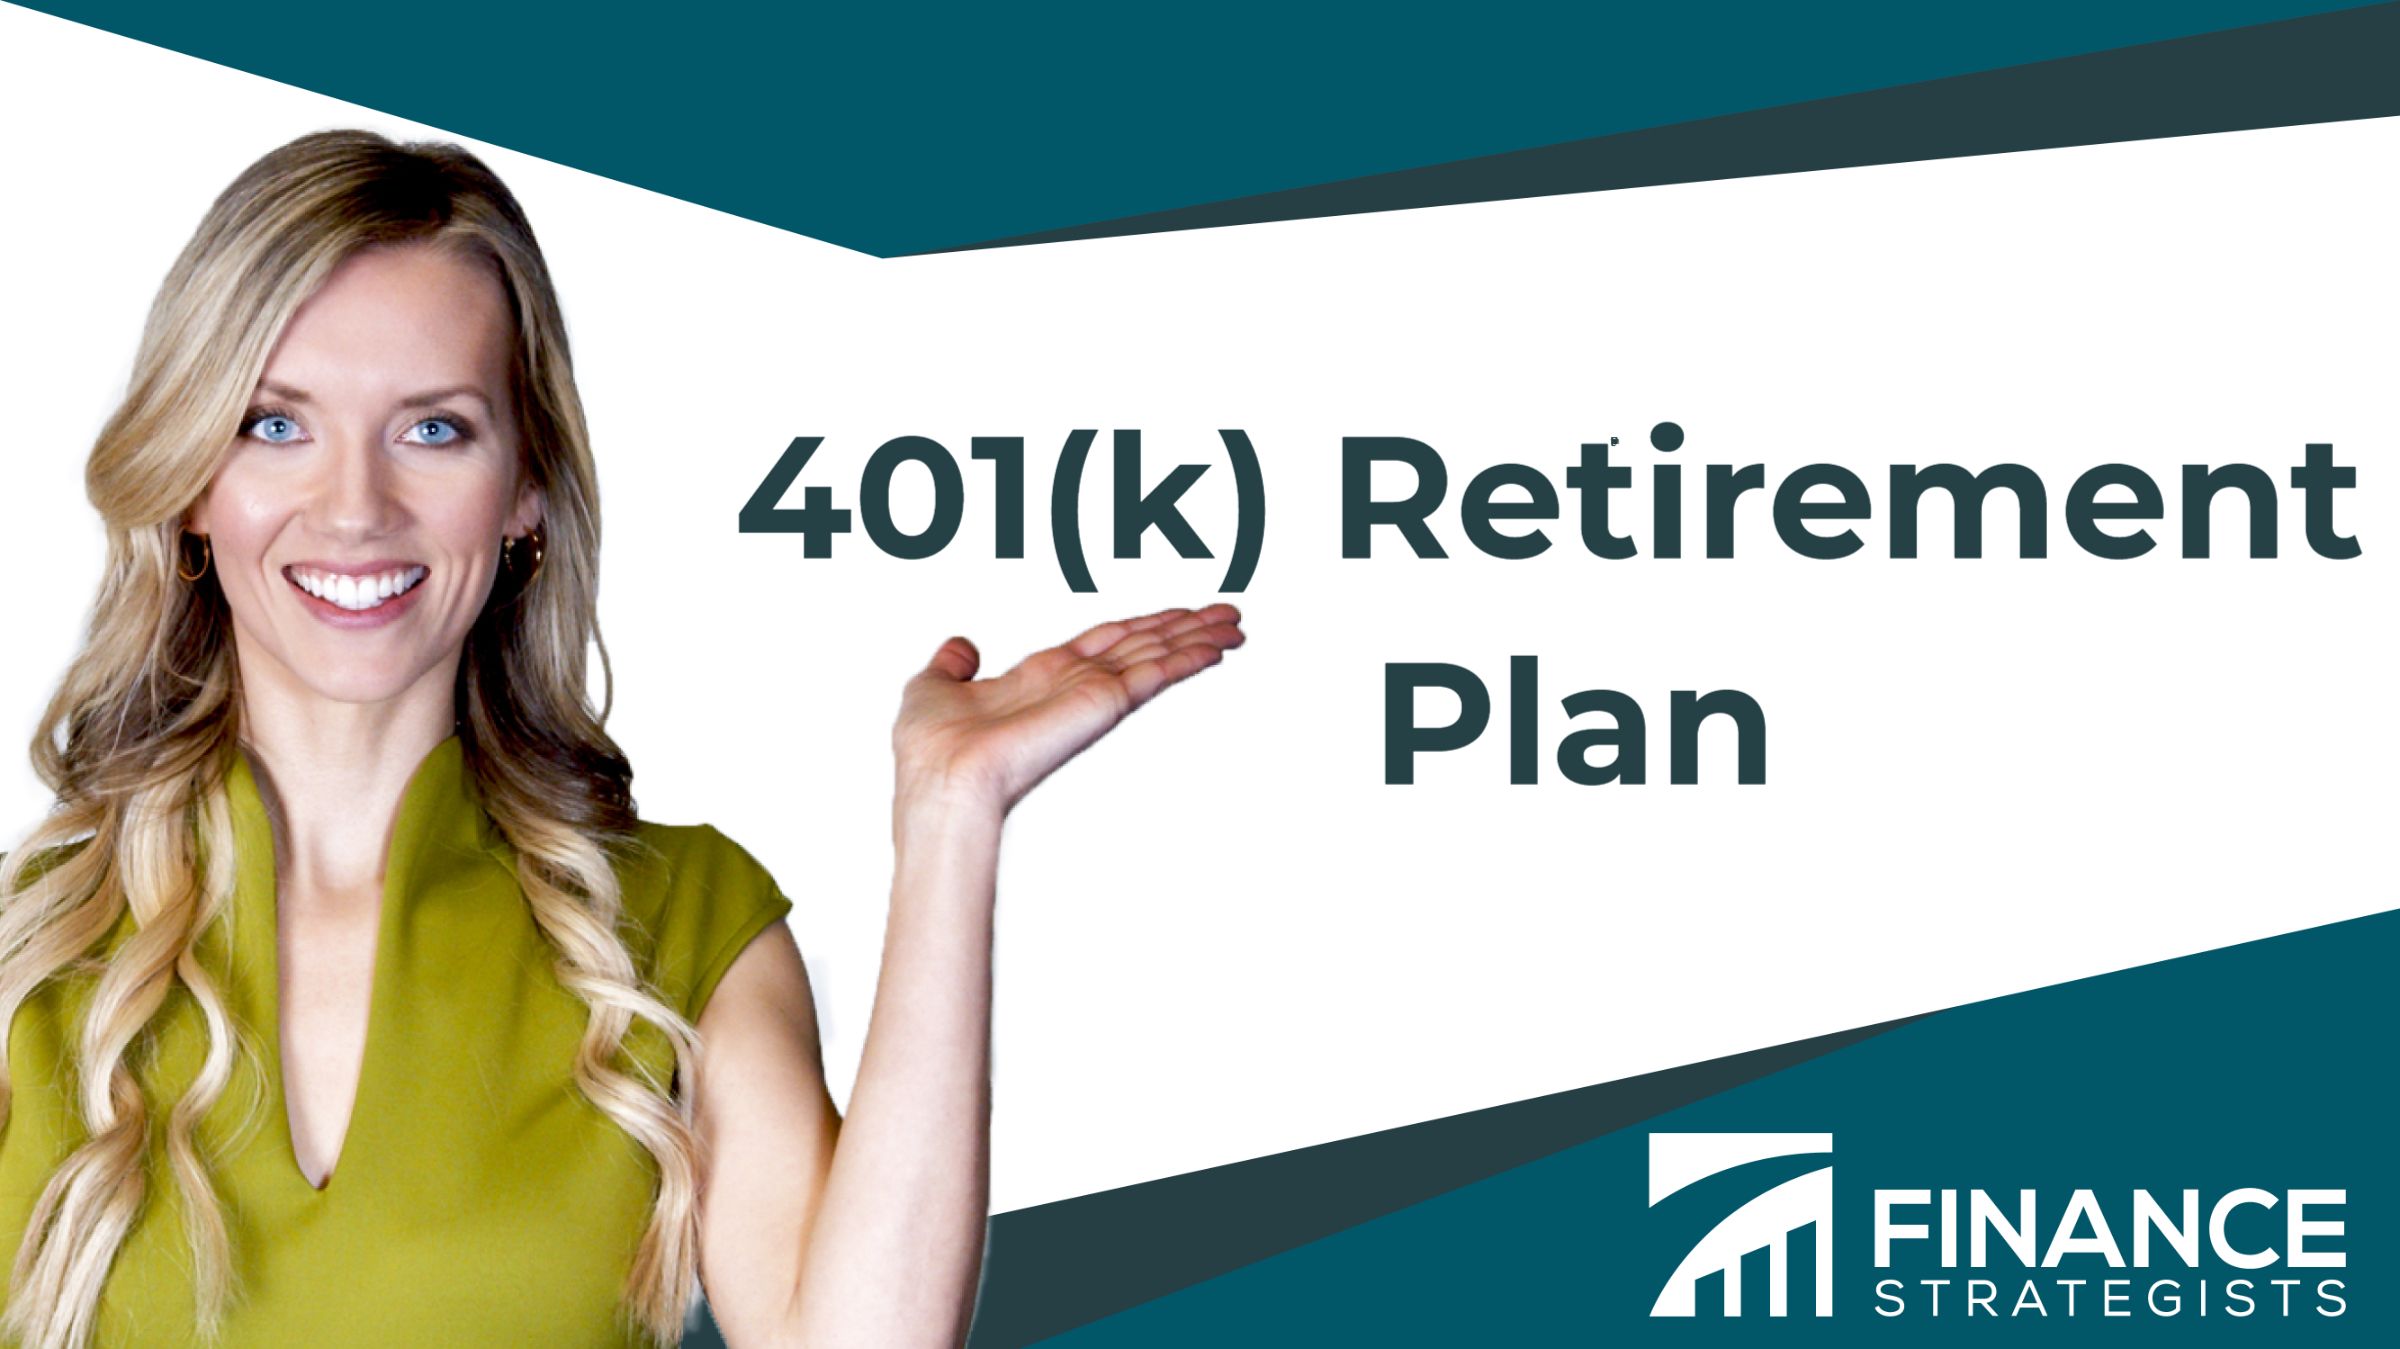 401(k) Retirement Plan